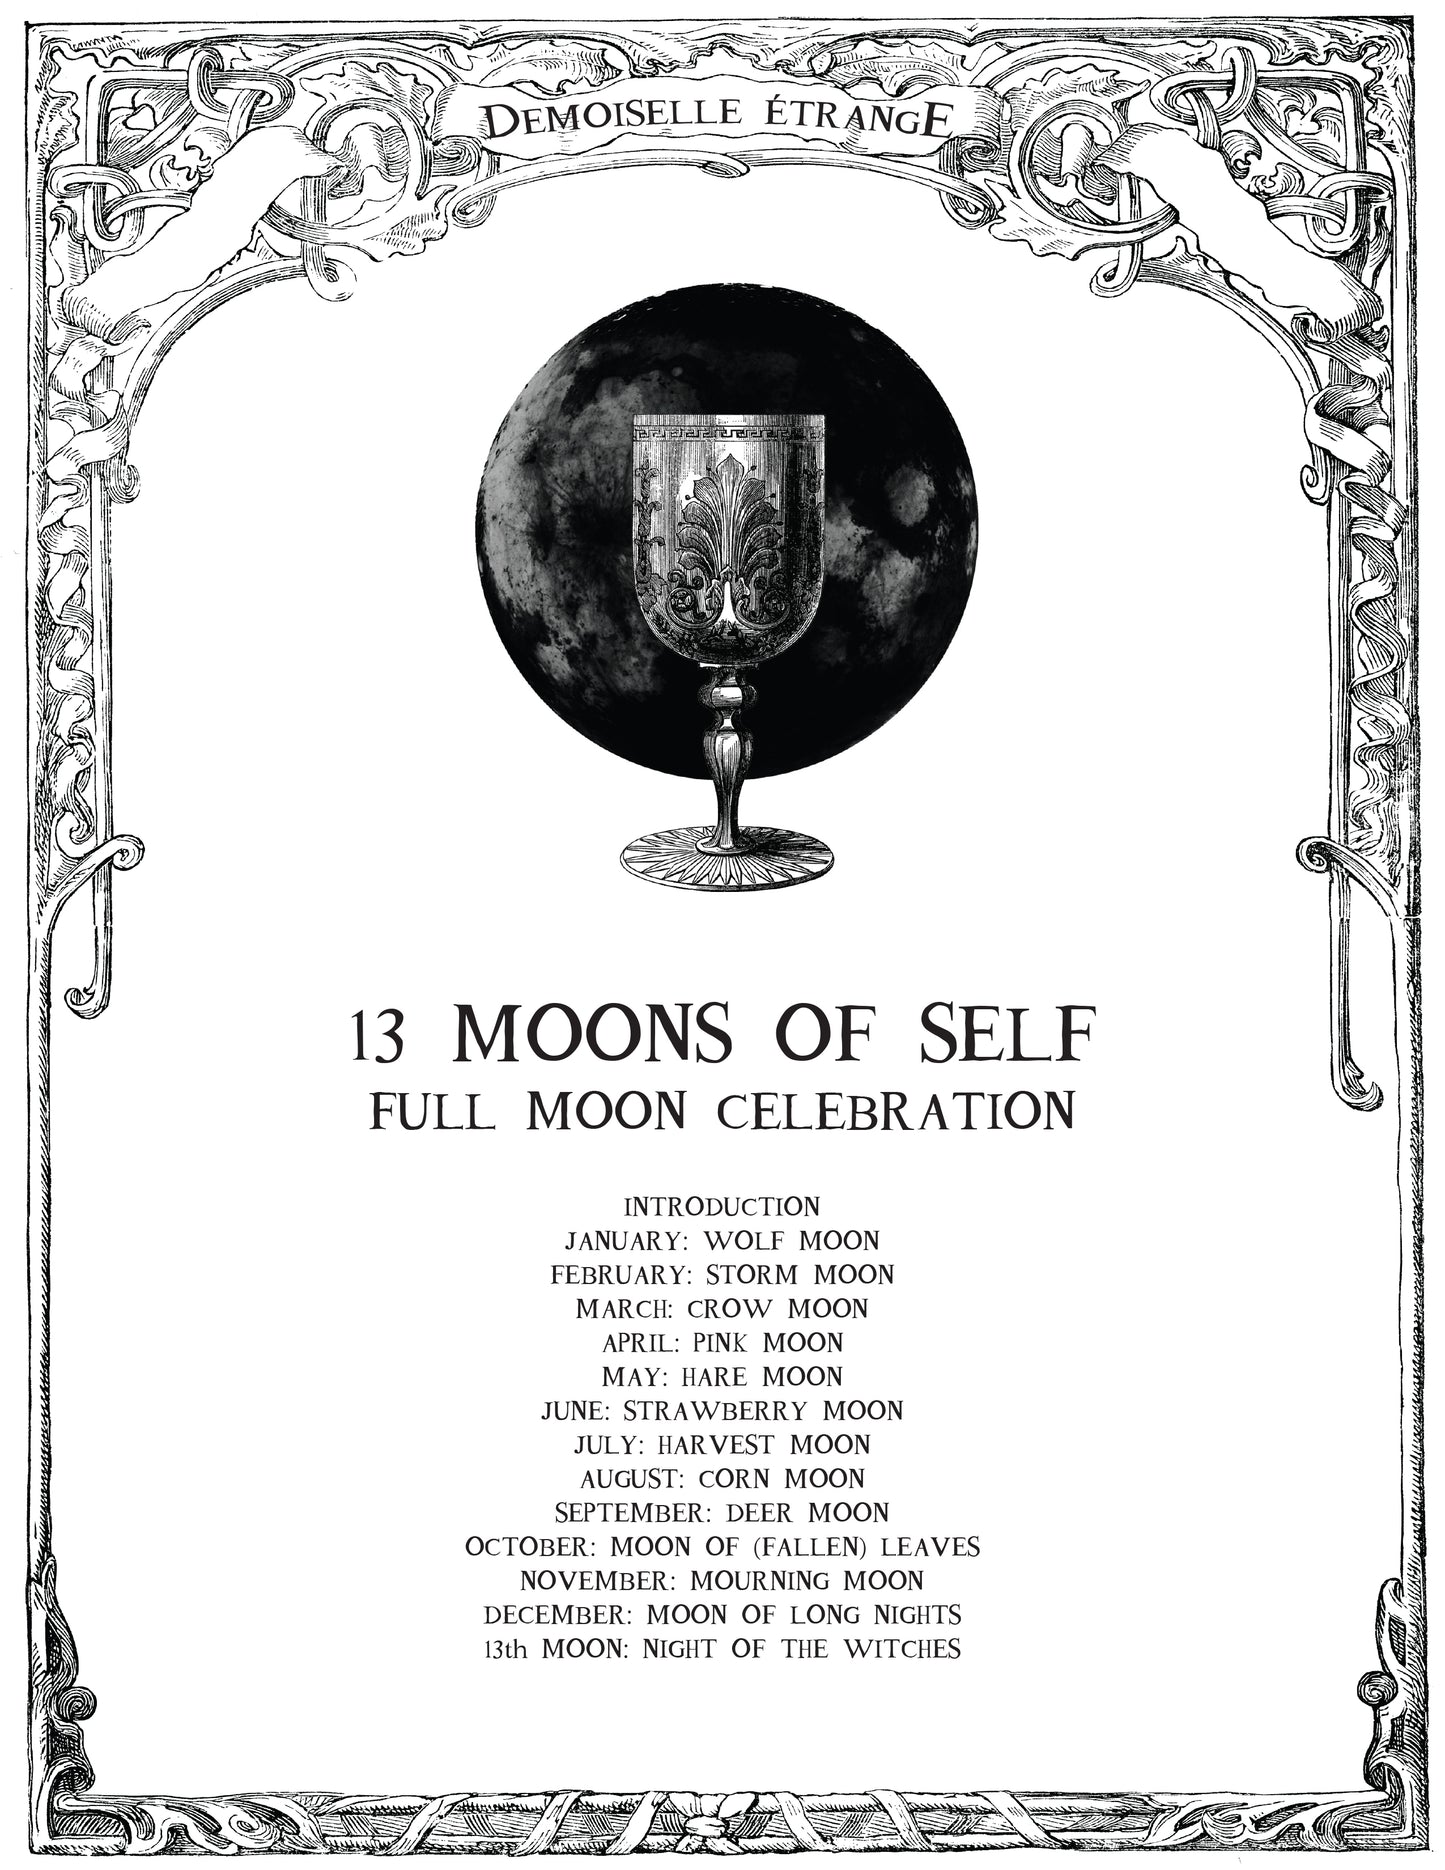 13 LUNES DE SOI: Célébrations des pleines lunes